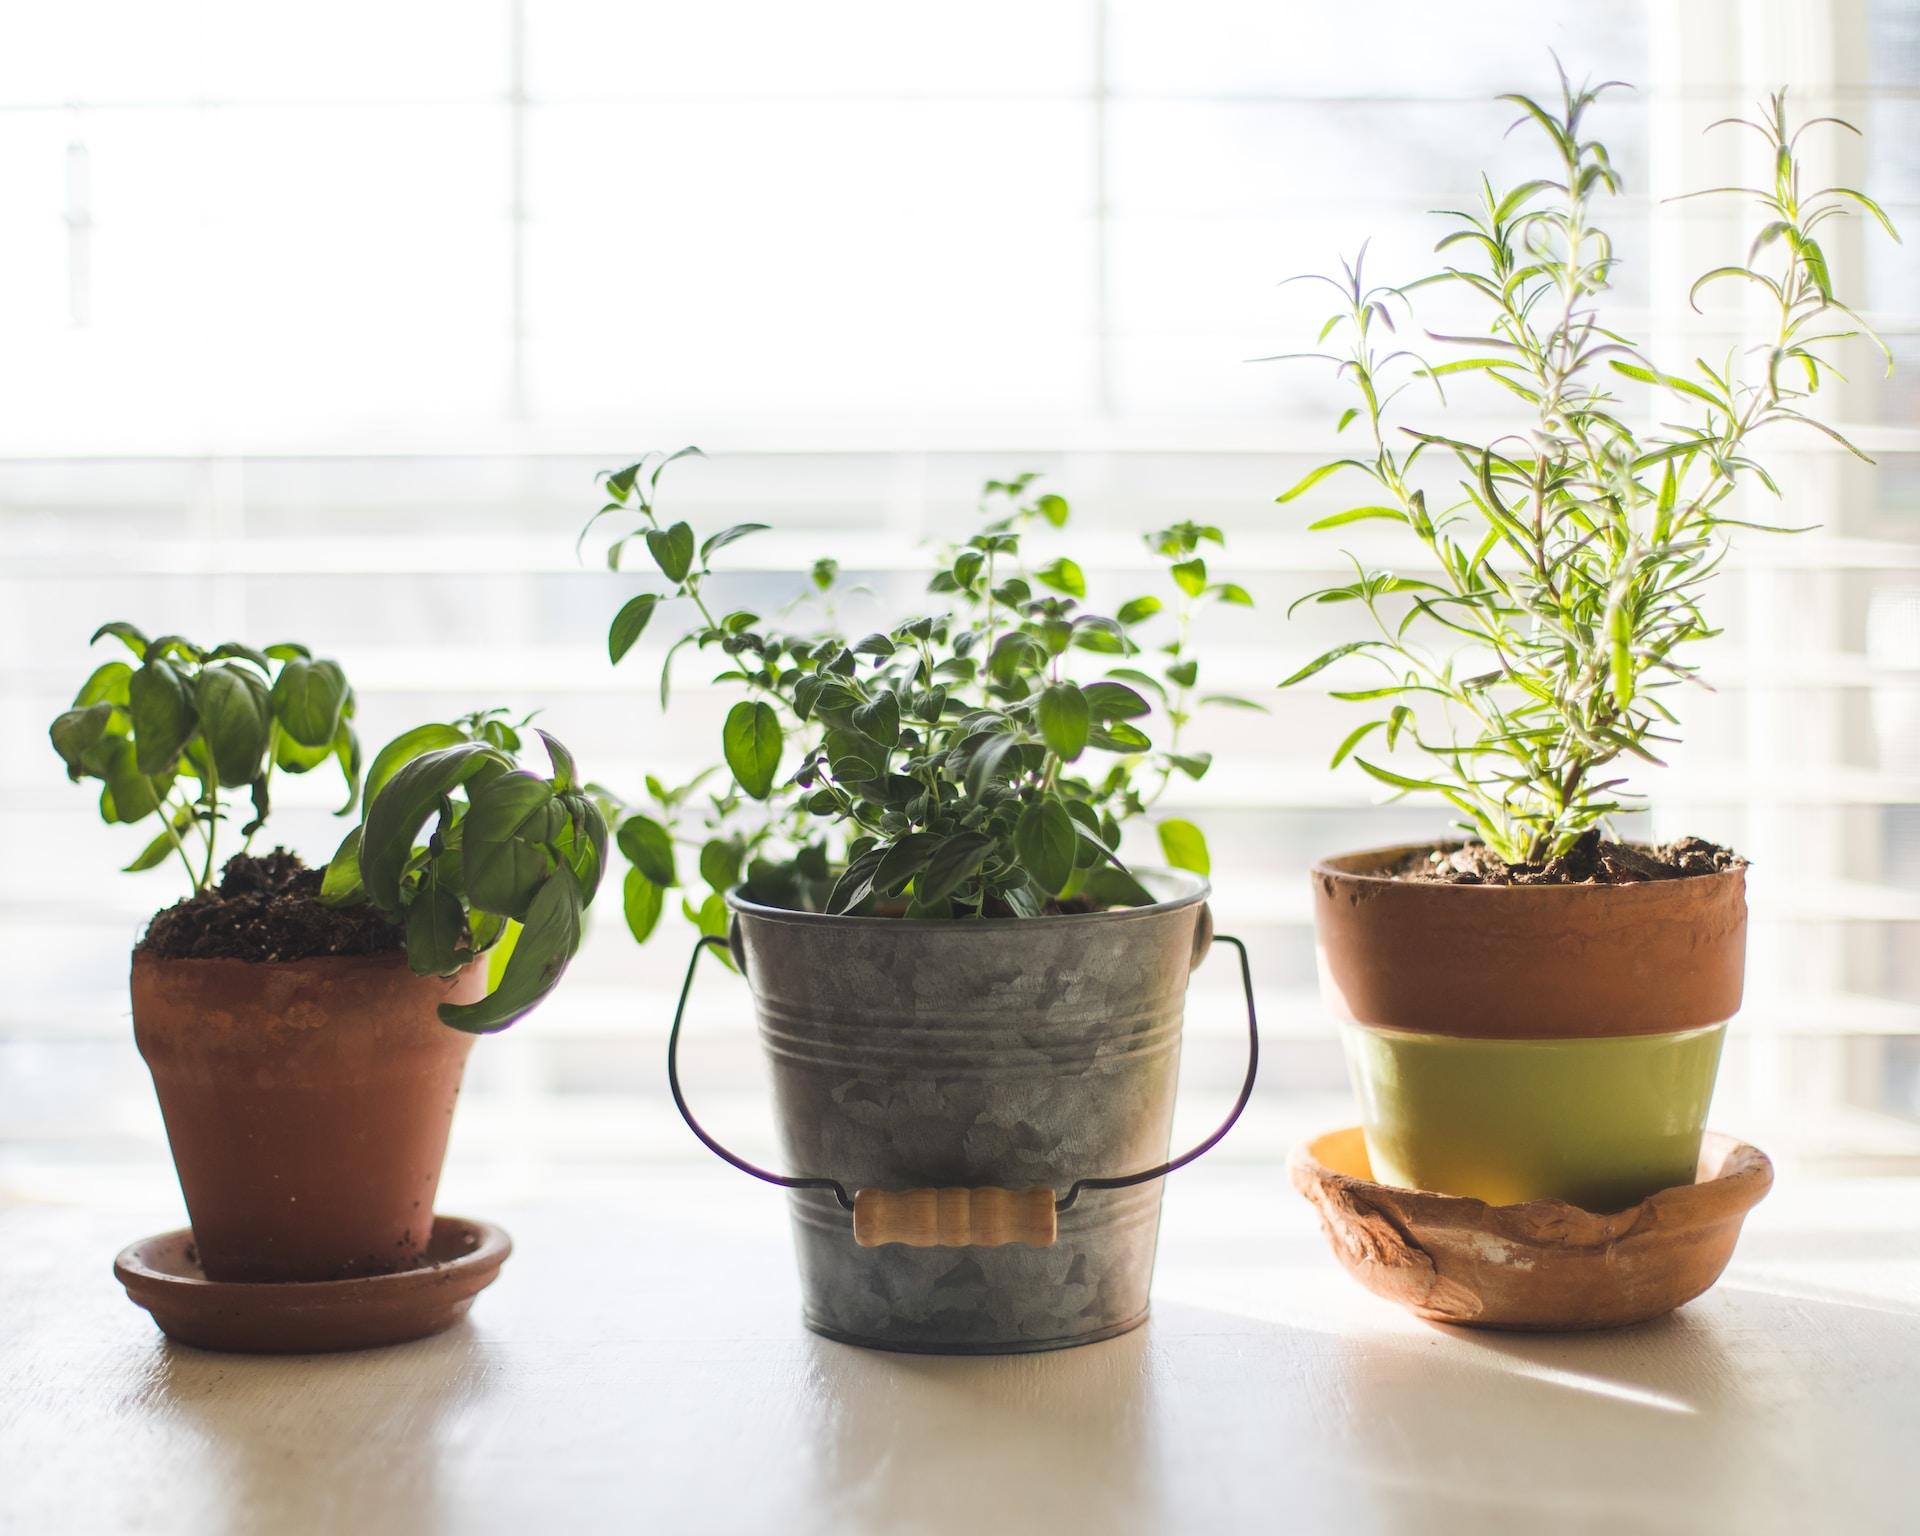 DIY Herb Garden Ideas